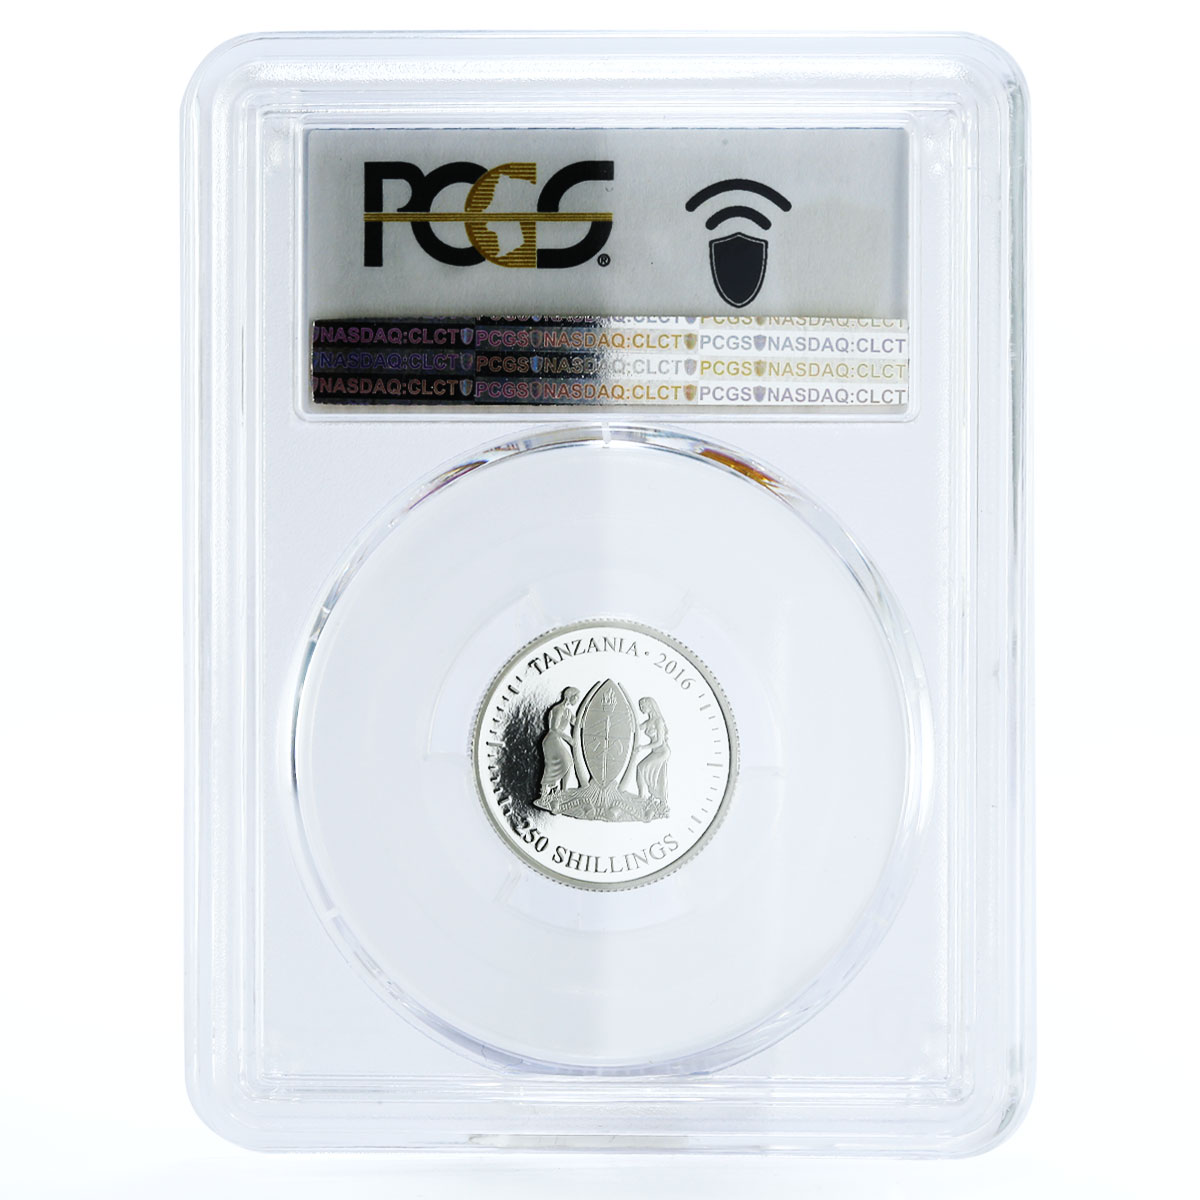 Tanzania 250 shillings Evolution of Time PR70 PCGS colored silver coin 2016